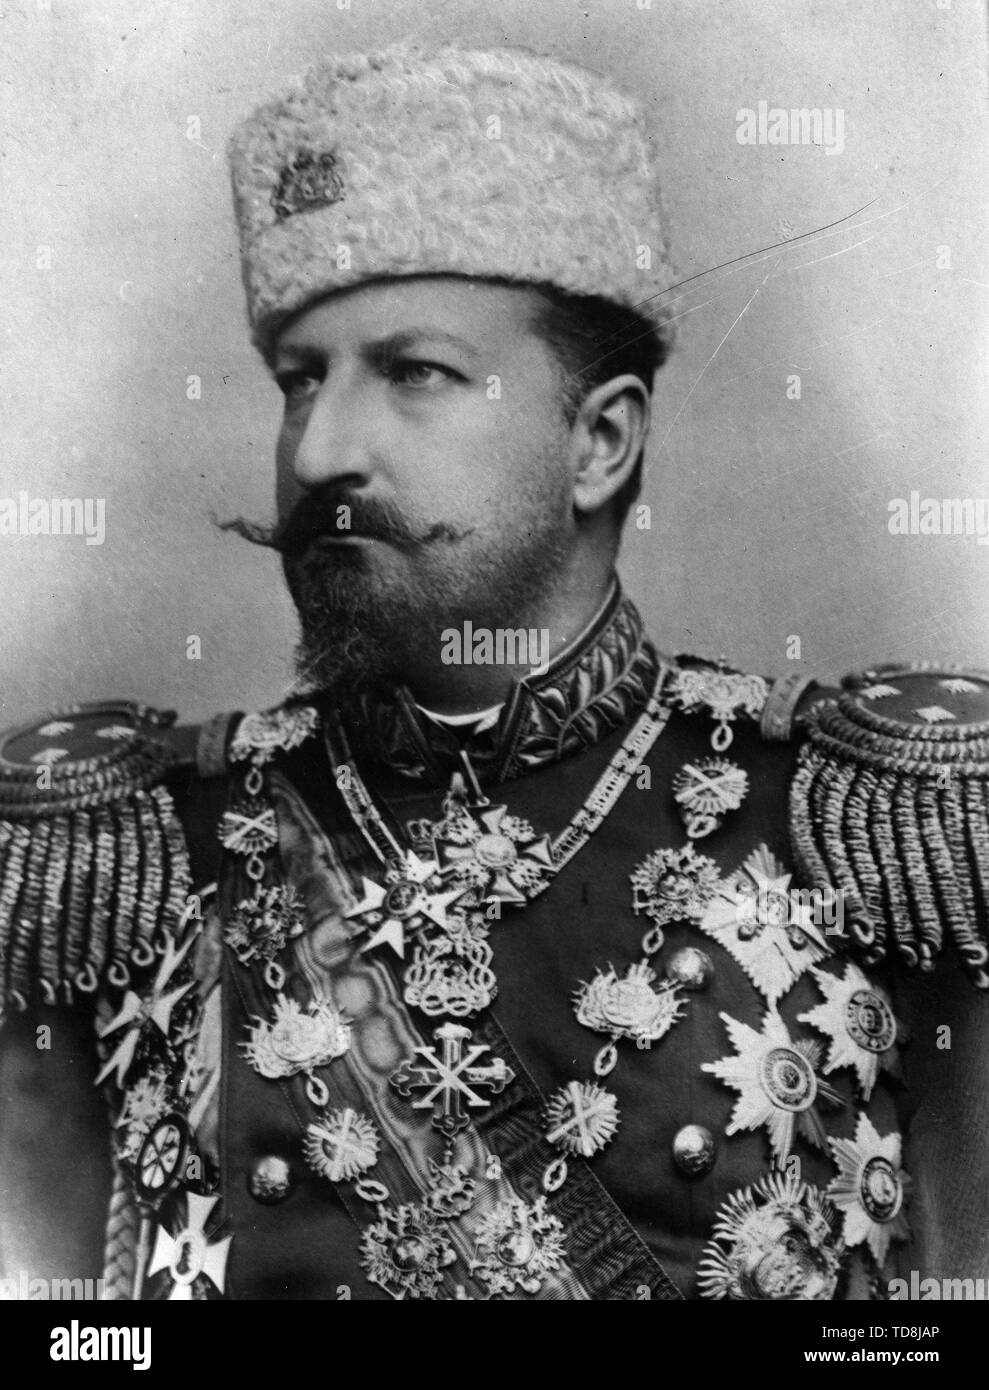 King Ferdinand of Bulgaria. Stock Photo